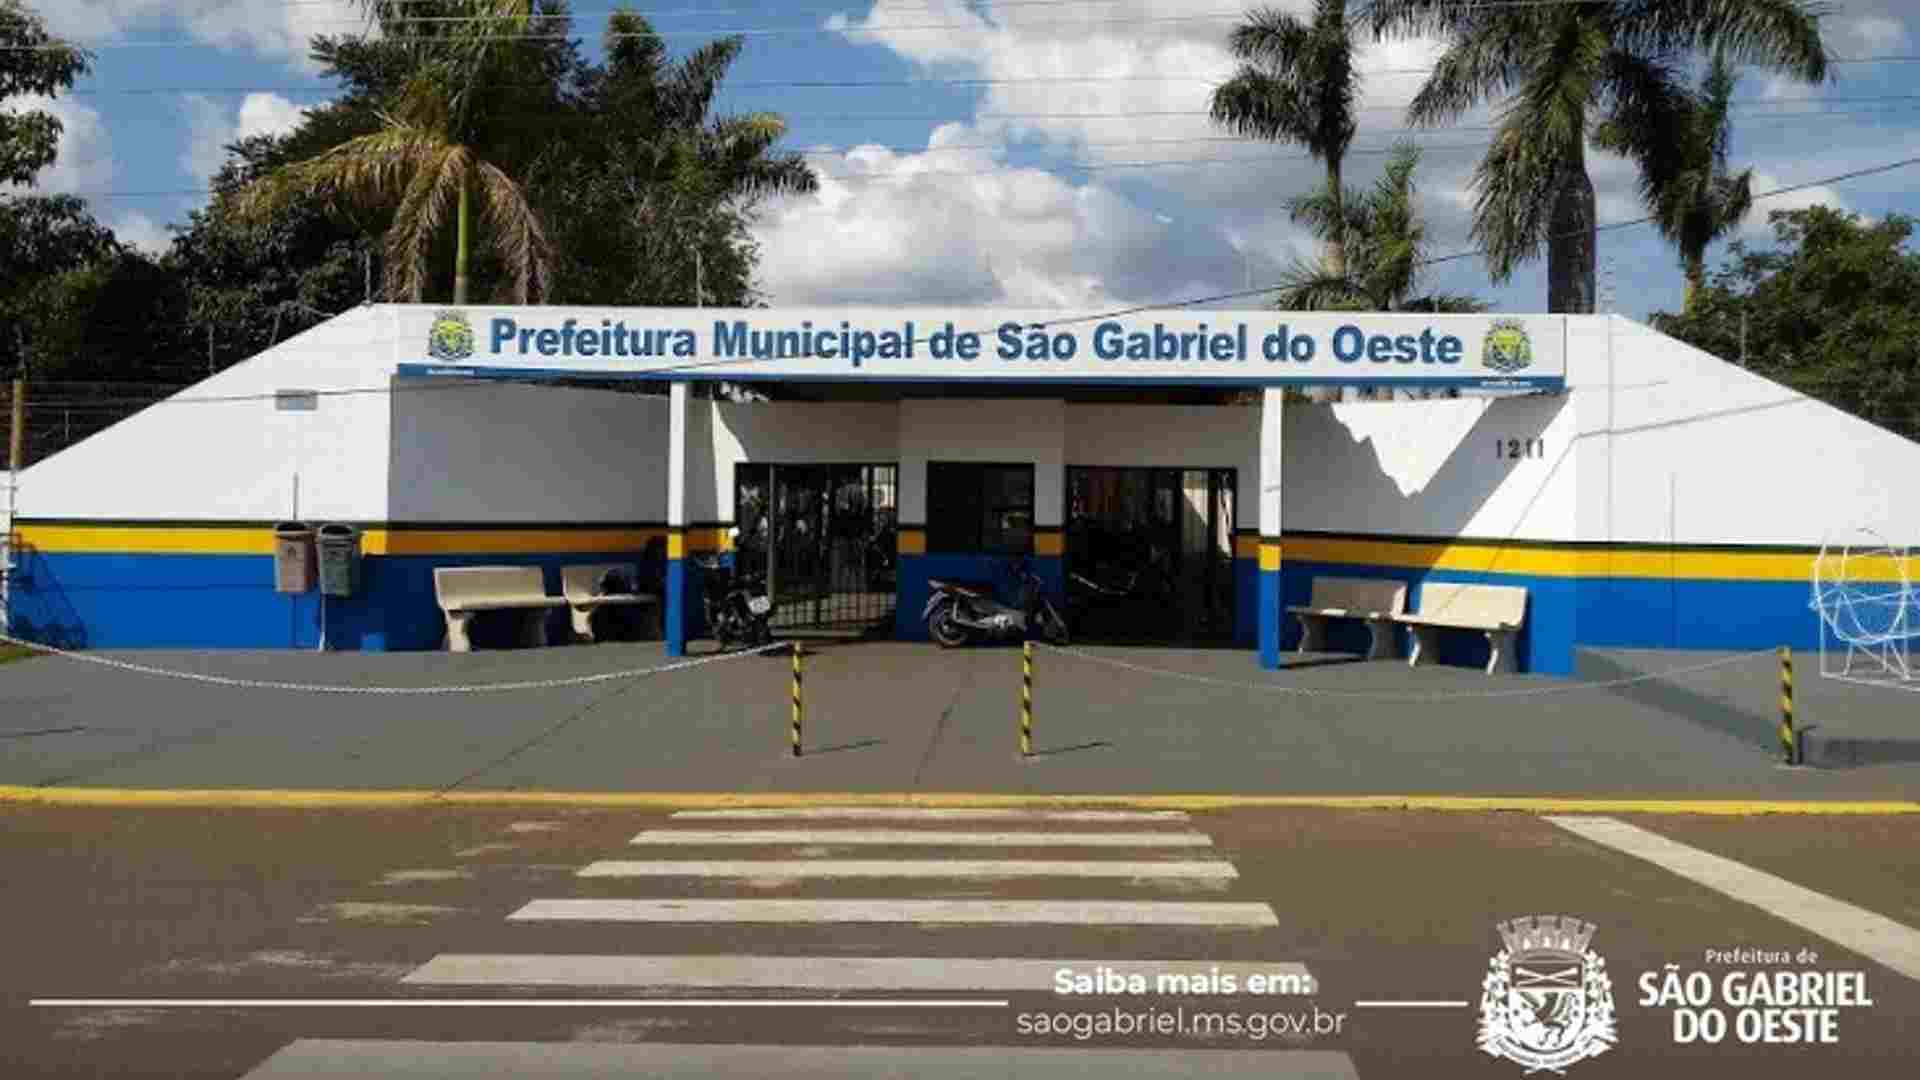 Divulgada empresa que receberá R$ 2,3 milhões para asfaltar ruas em São Gabriel do Oeste